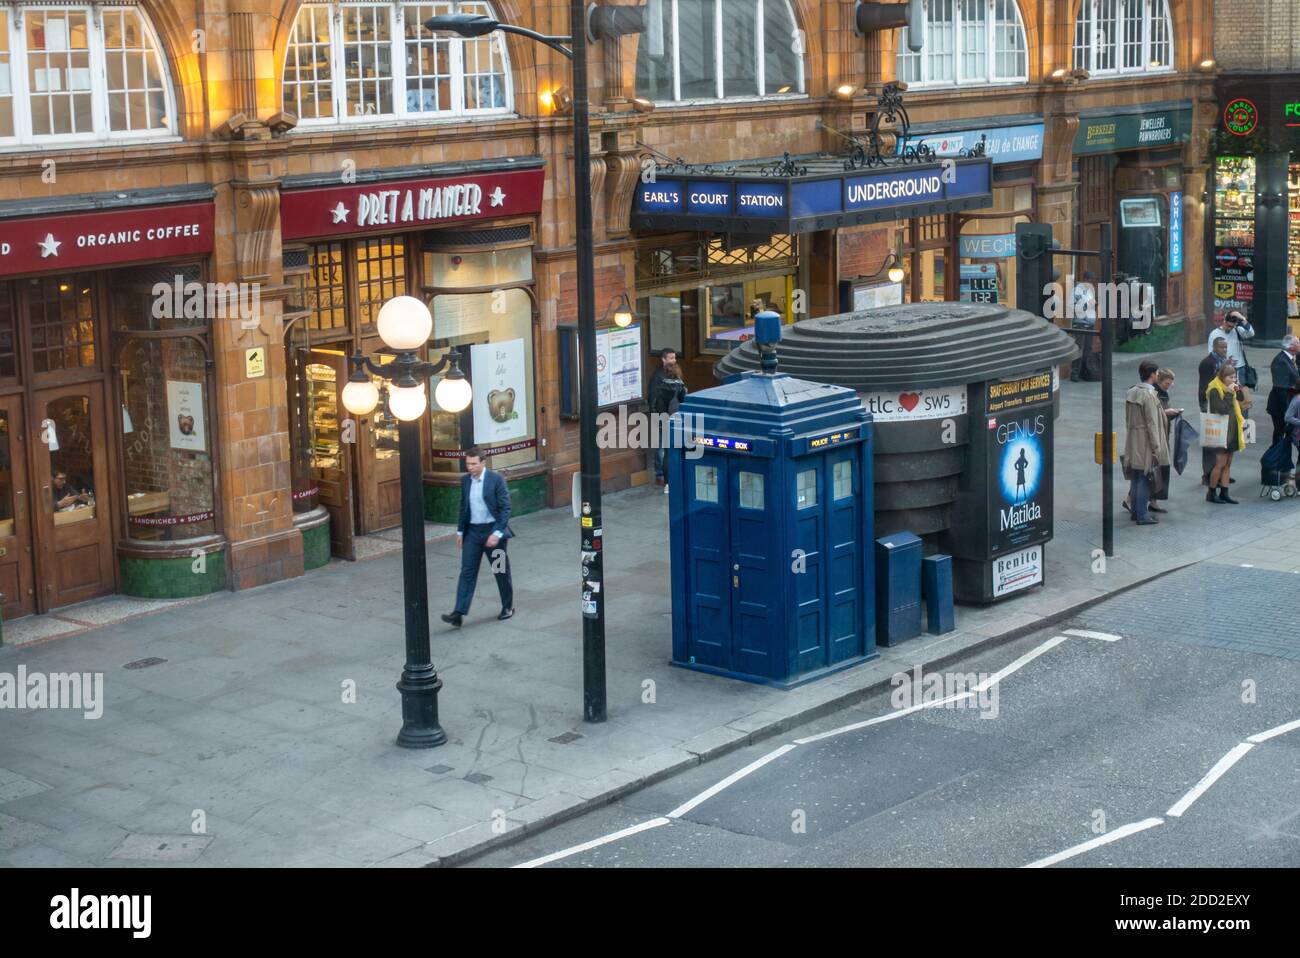 Ein Polizeikästchen im Stil von Dr Who TARDIS vor der U-Bahnstation Earl's Court. Telefonanruf der Polizei vor der U-Bahn-Station Earls Court, London, Großbritannien. Stockfoto